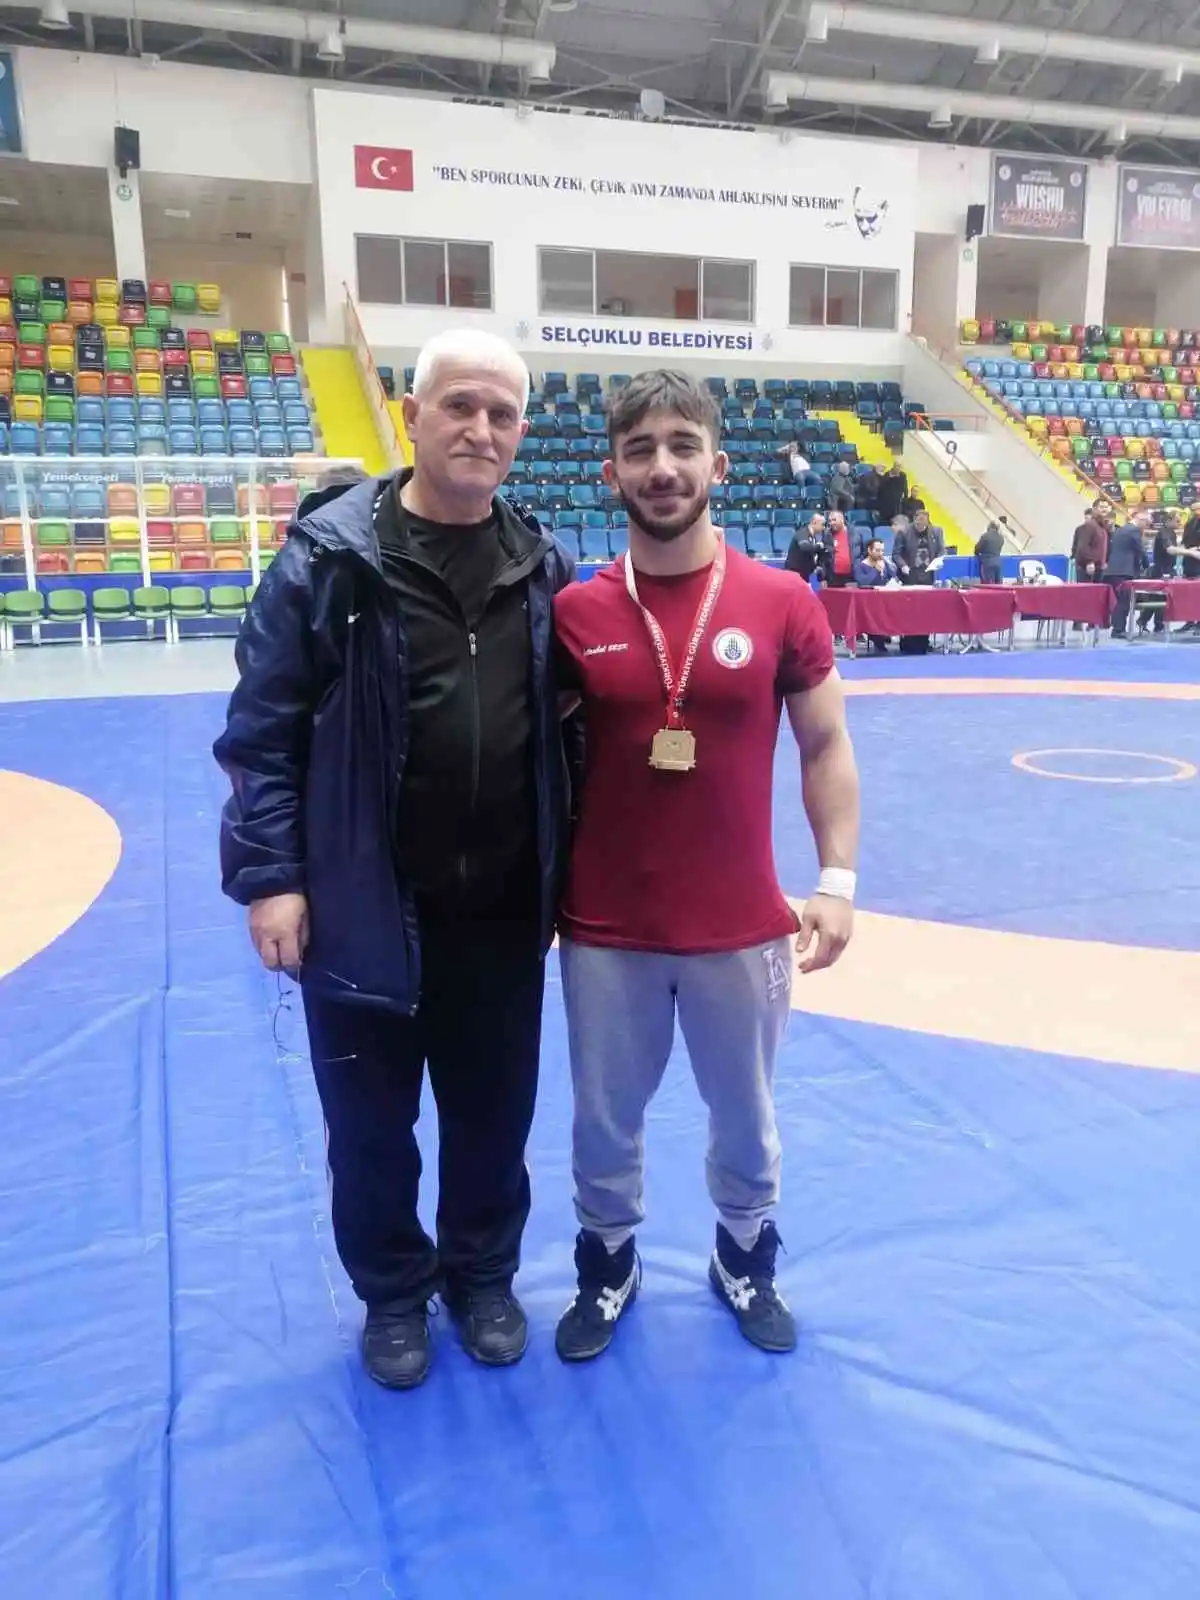 BARÜ’lü Milli Sporcu Emre Kural, Türkiye şampiyonu oldu
